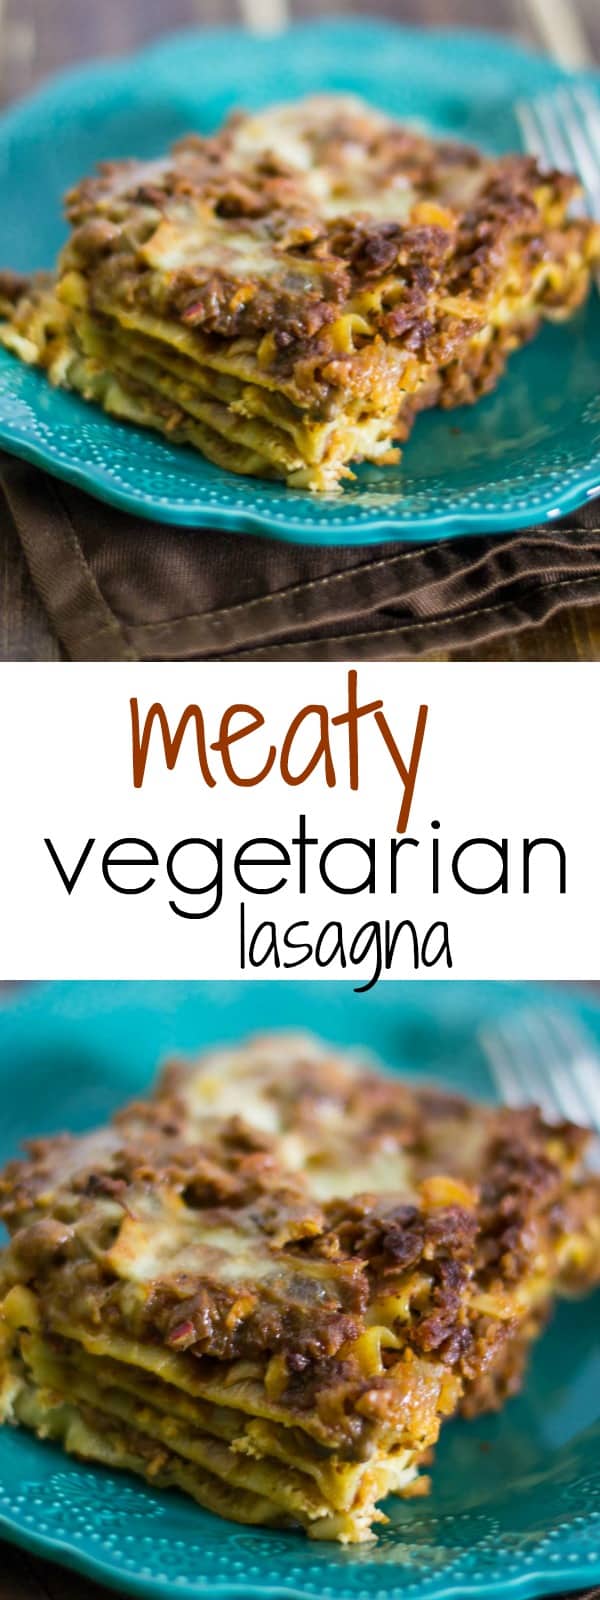 meaty vegetarian lasagna